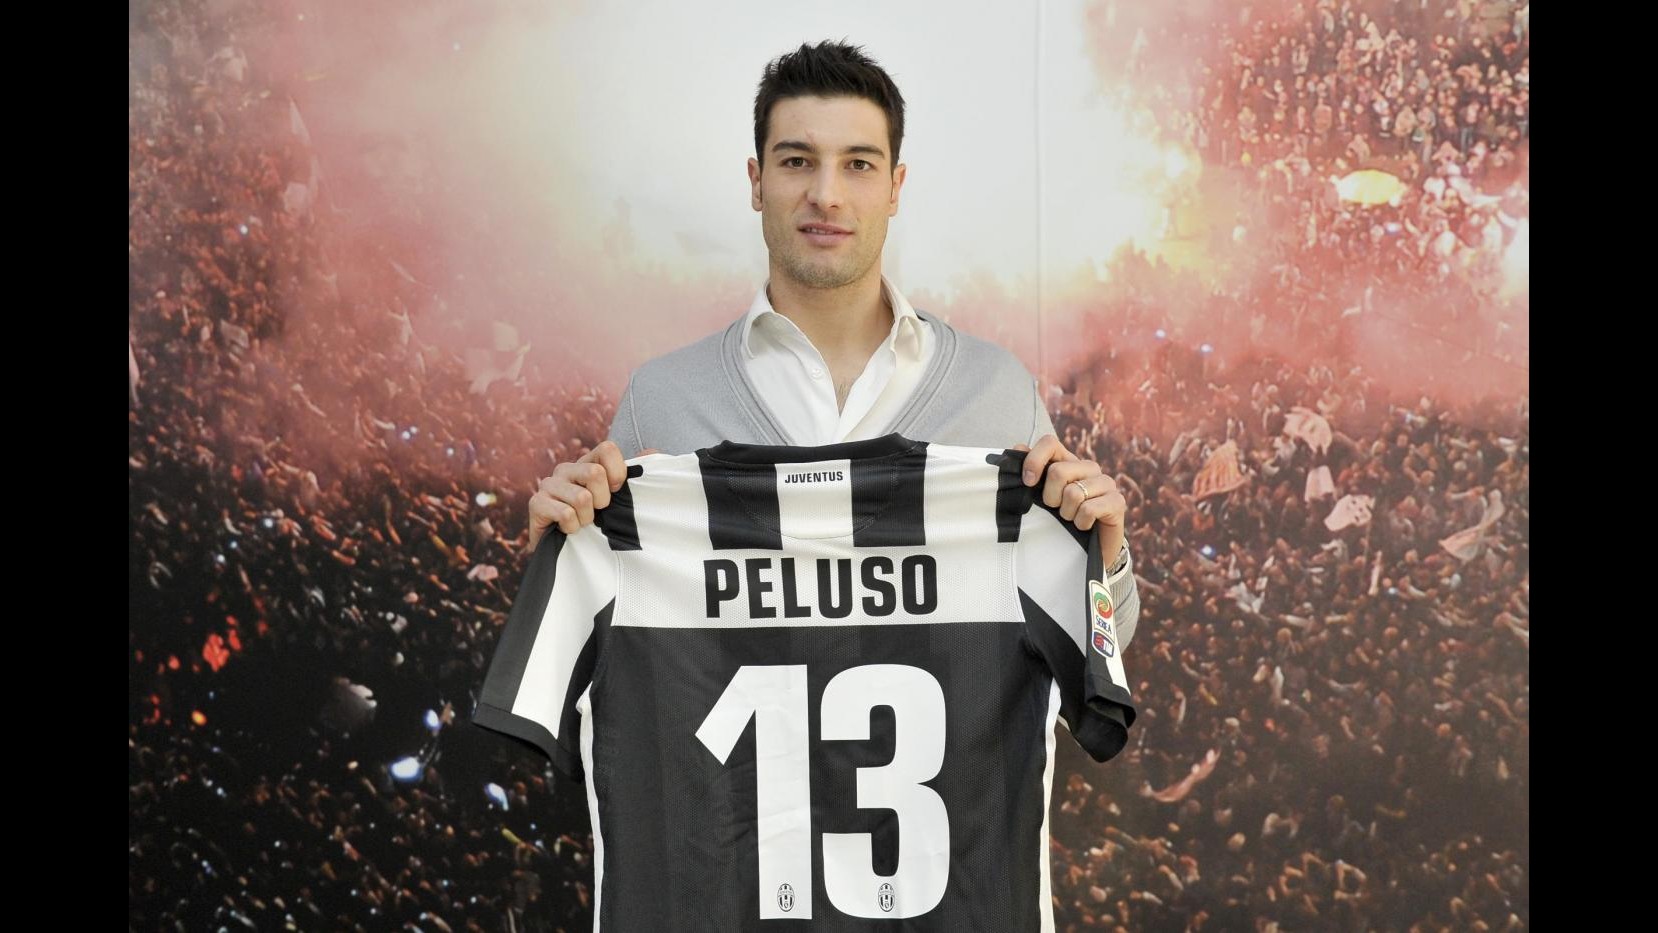 Ufficiale, Peluso è un giocatore della Juve: E’ un sogno che si realizza